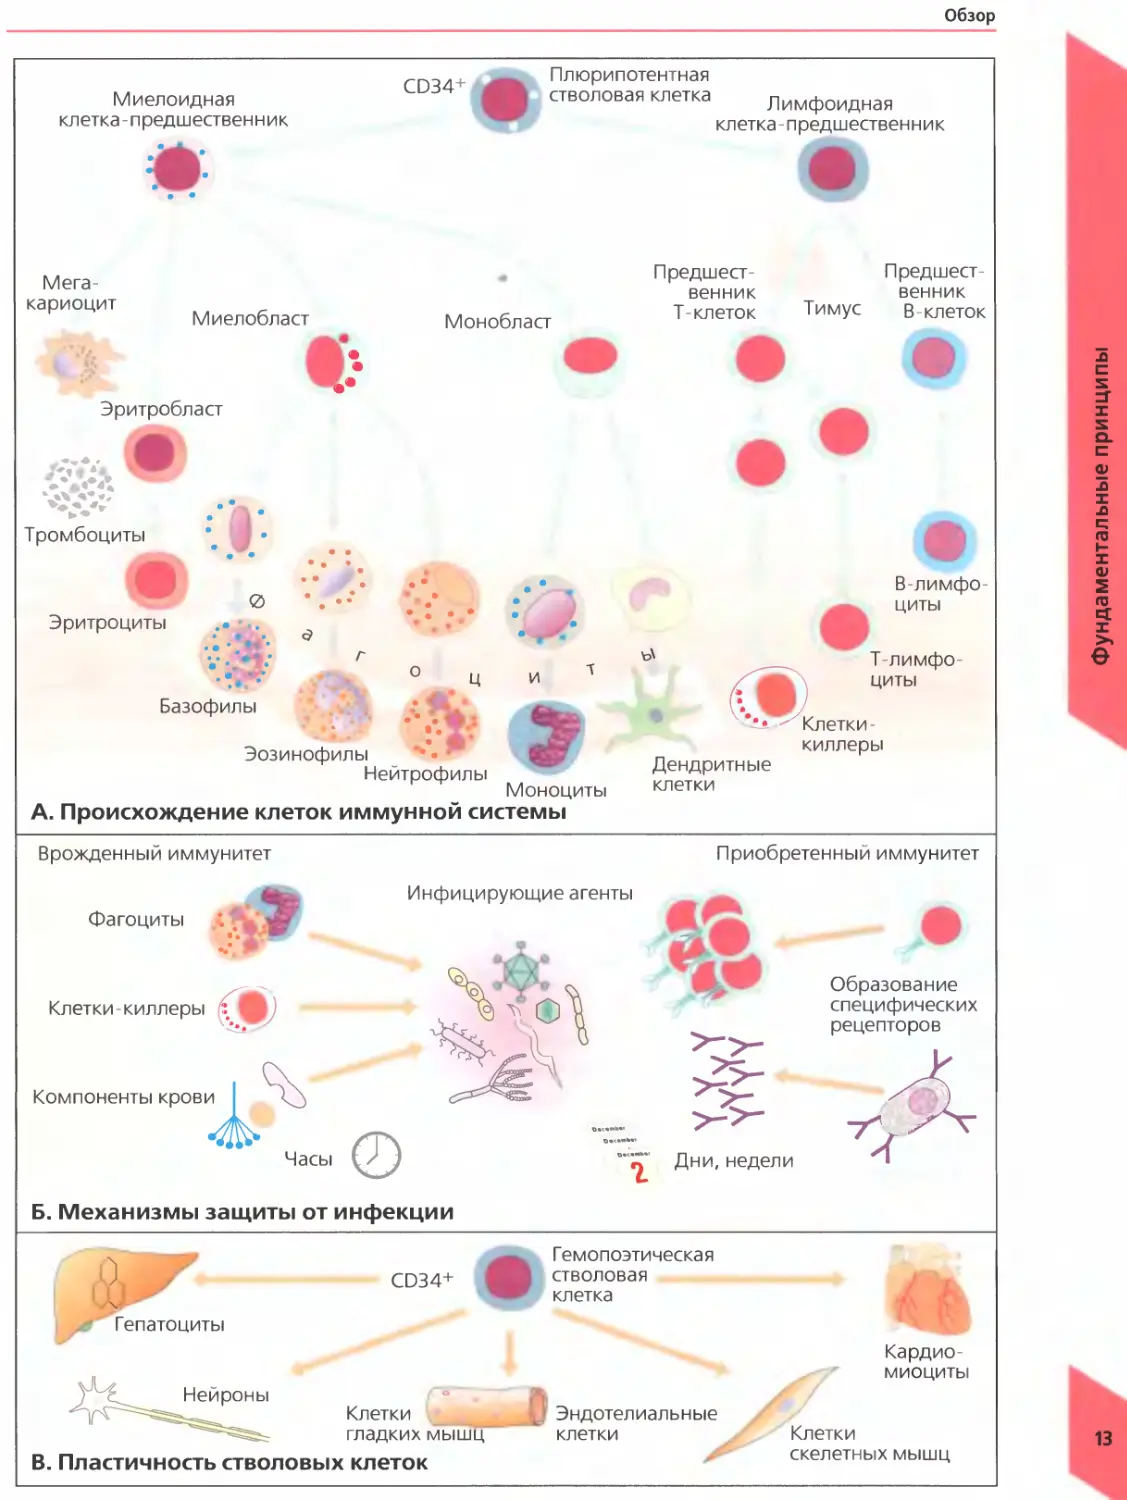 Созревание иммунных клеток. Клетки иммунной системы перечень. Иммунная система человека клетки иммунной системы. Схема дифференцировки клеток иммунной системы. Плюрипотентные гемопоэтические стволовые клетки.